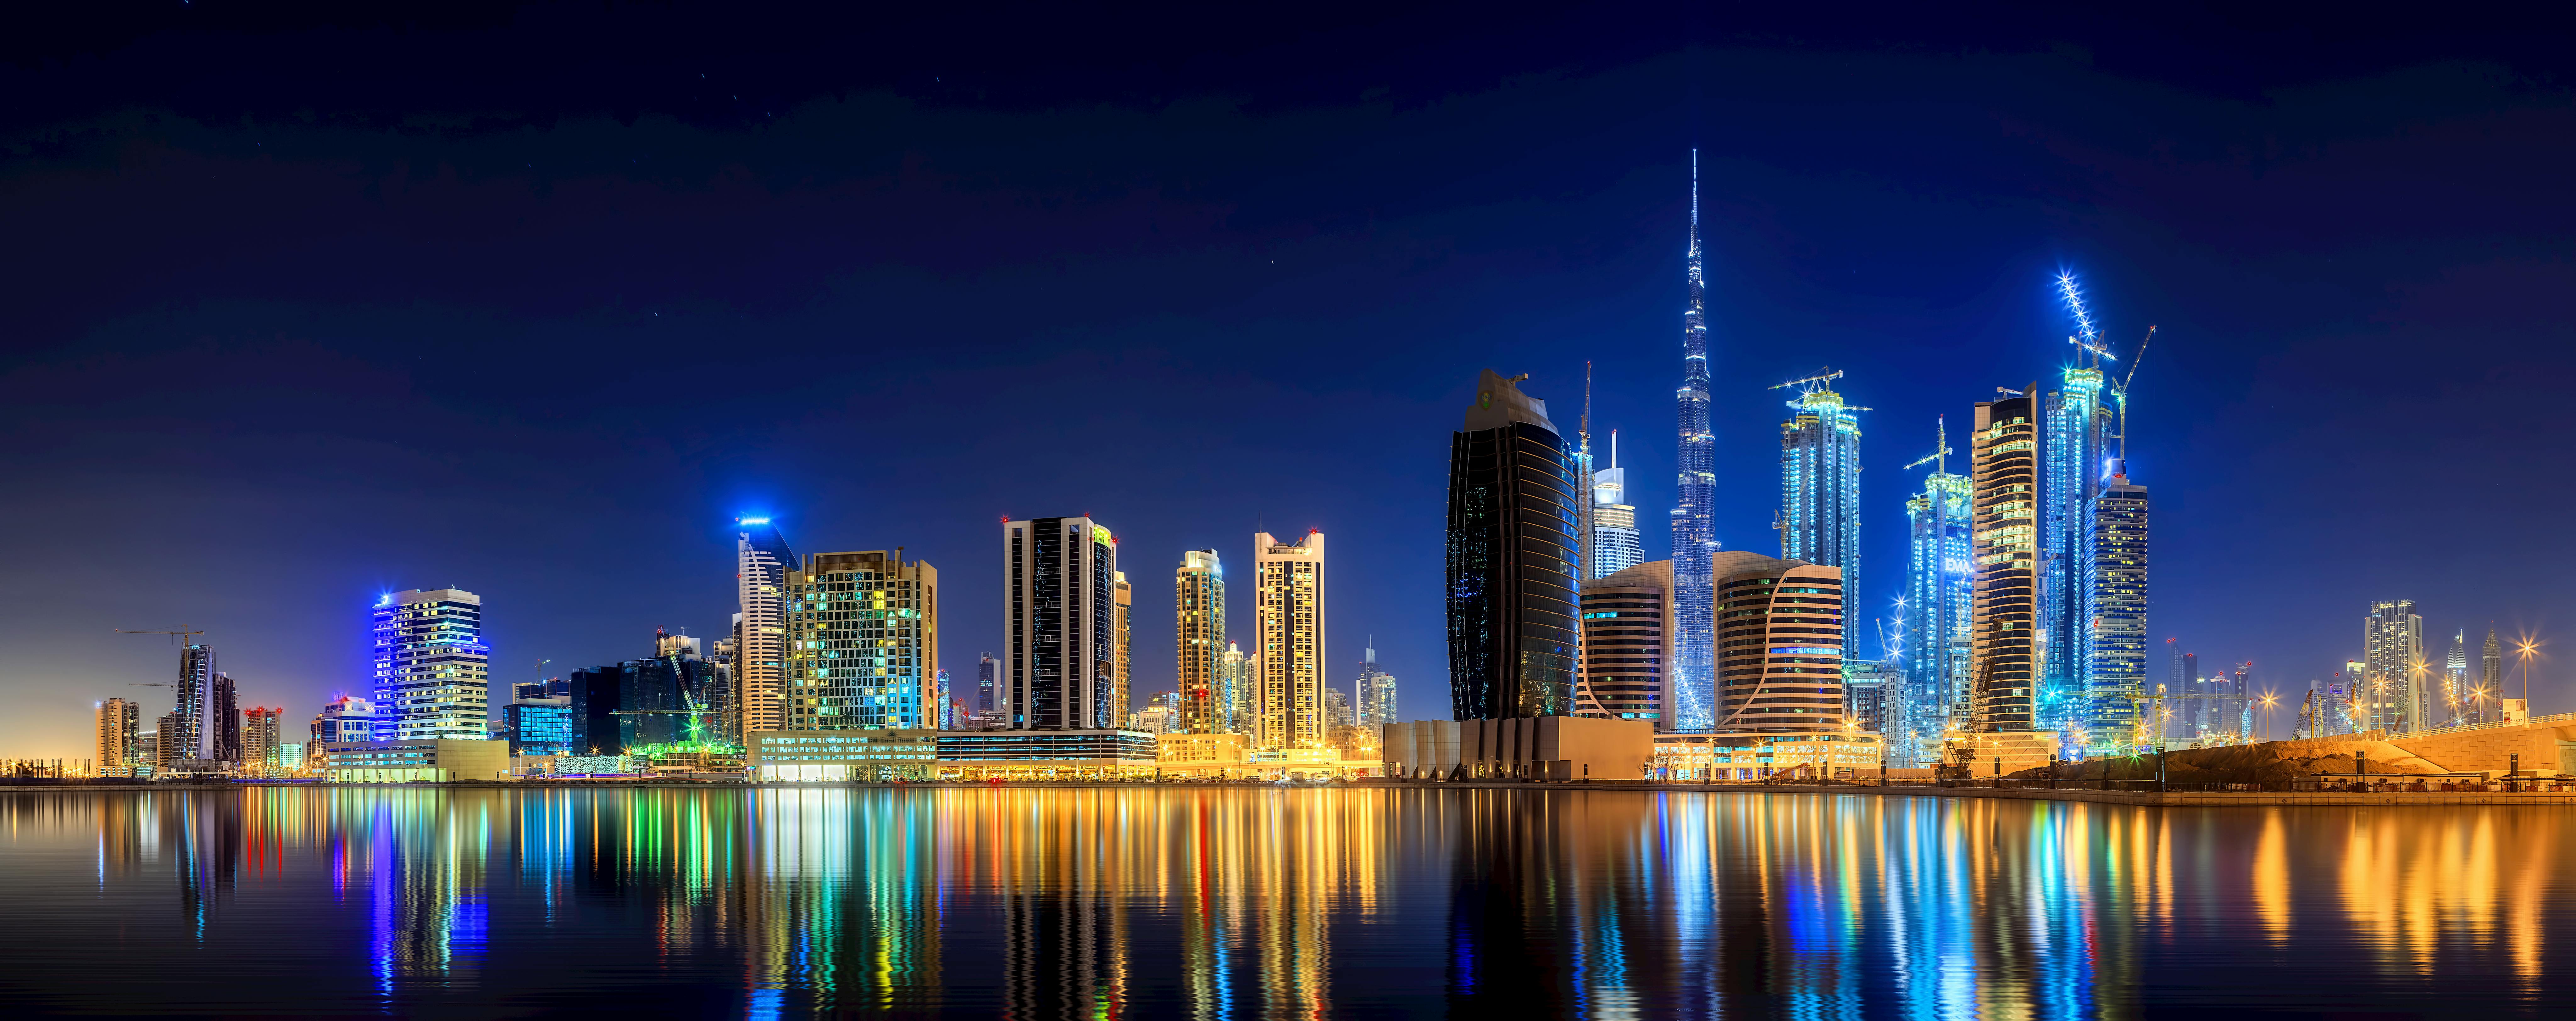 Panorama-Tour durch Dubai bei Nacht